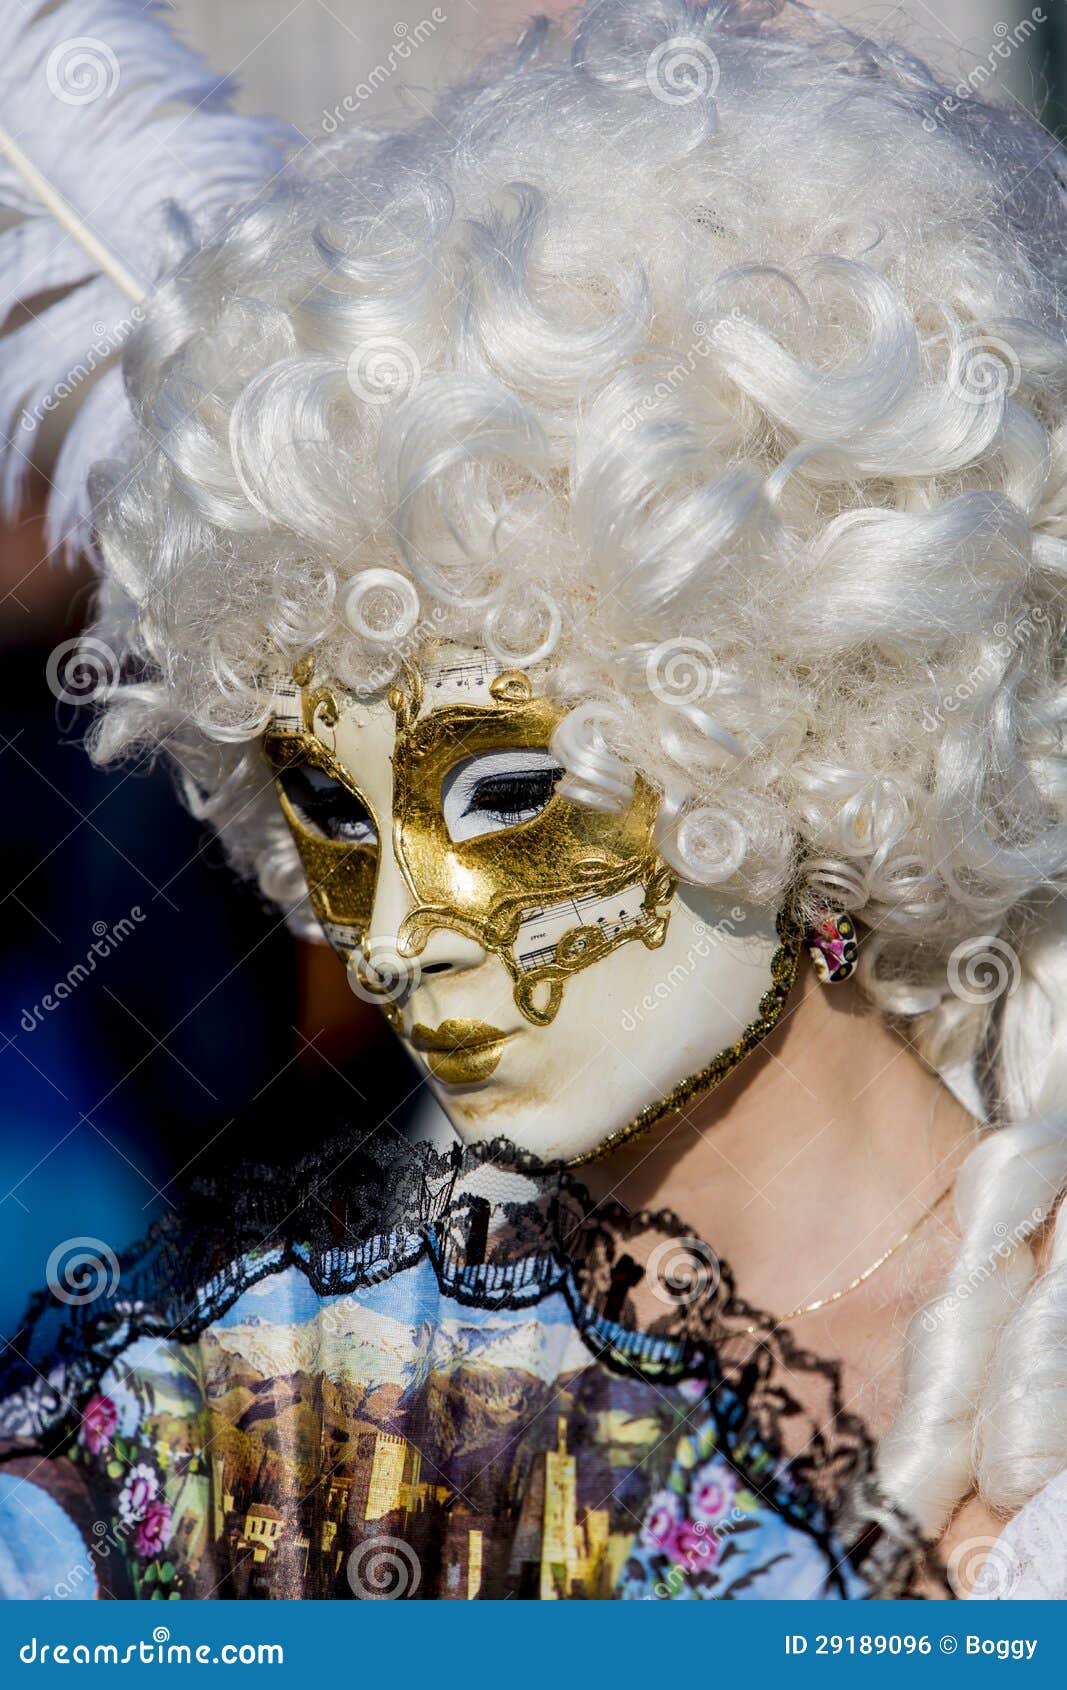 Венецианская маска масленицы. Неопознанная персона с традиционной венецианской маской масленицы.